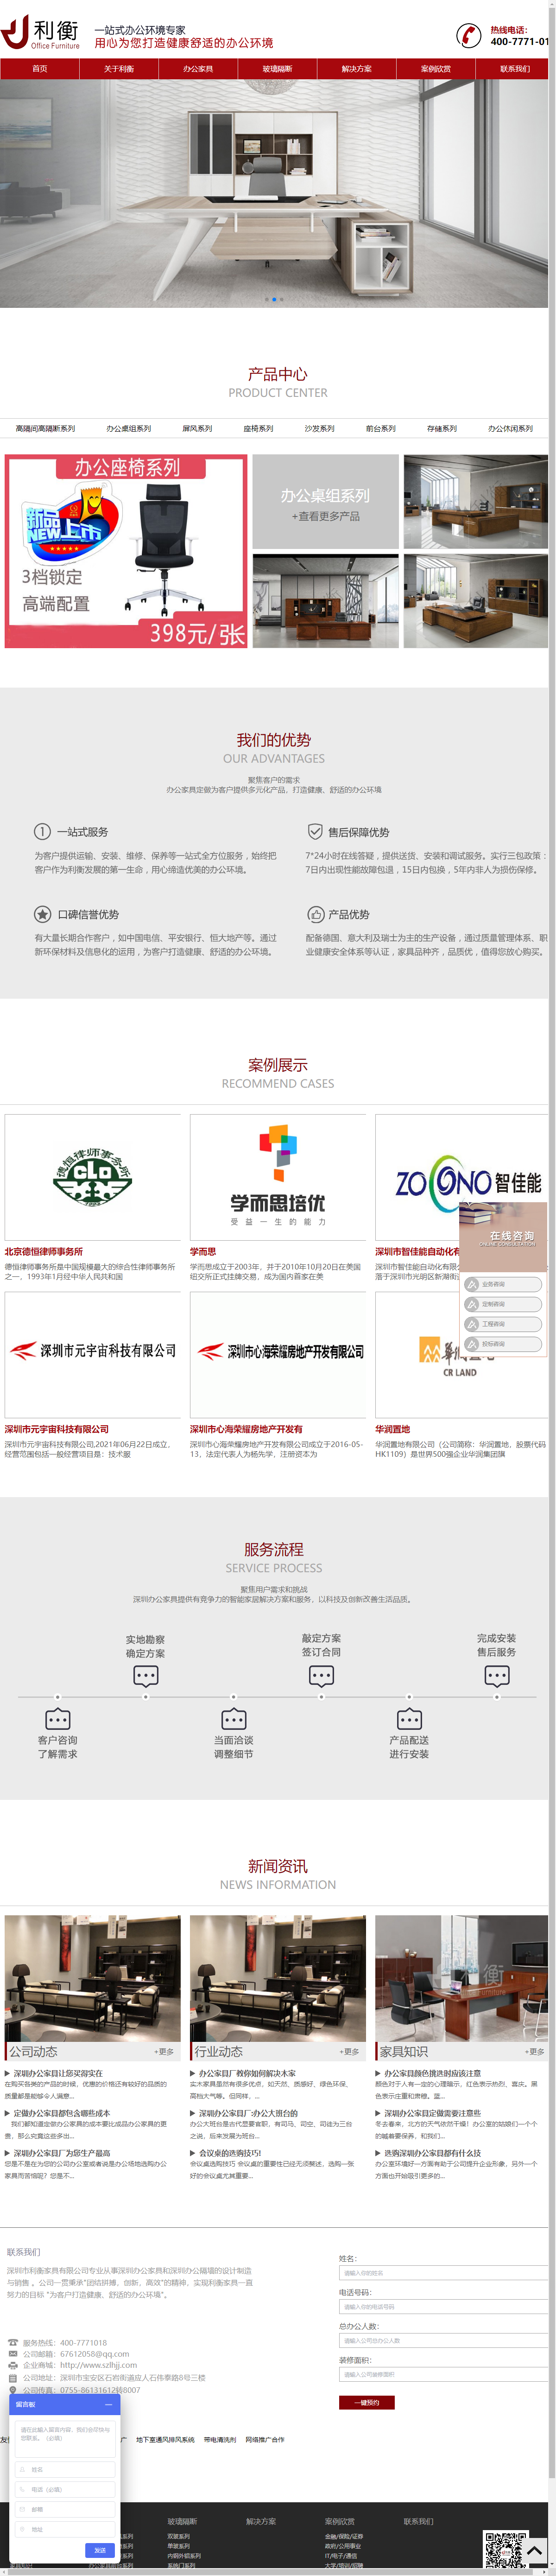 深圳市利衡家具有限公司网站案例